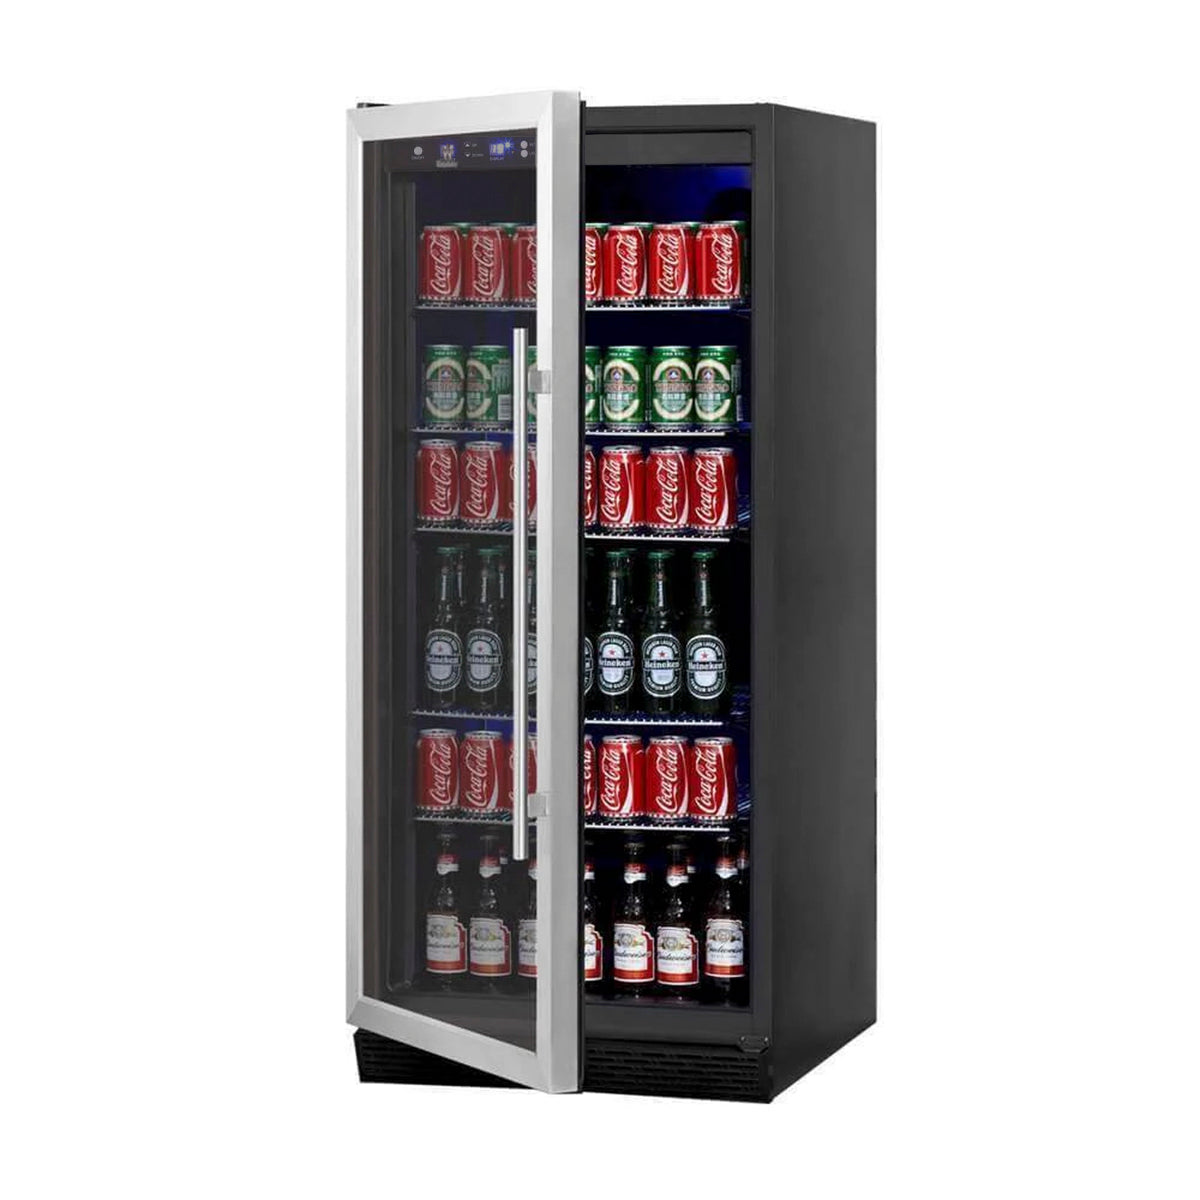 KingsBottle 36 inch Outdoor Beverage Refrigerator 2 Door